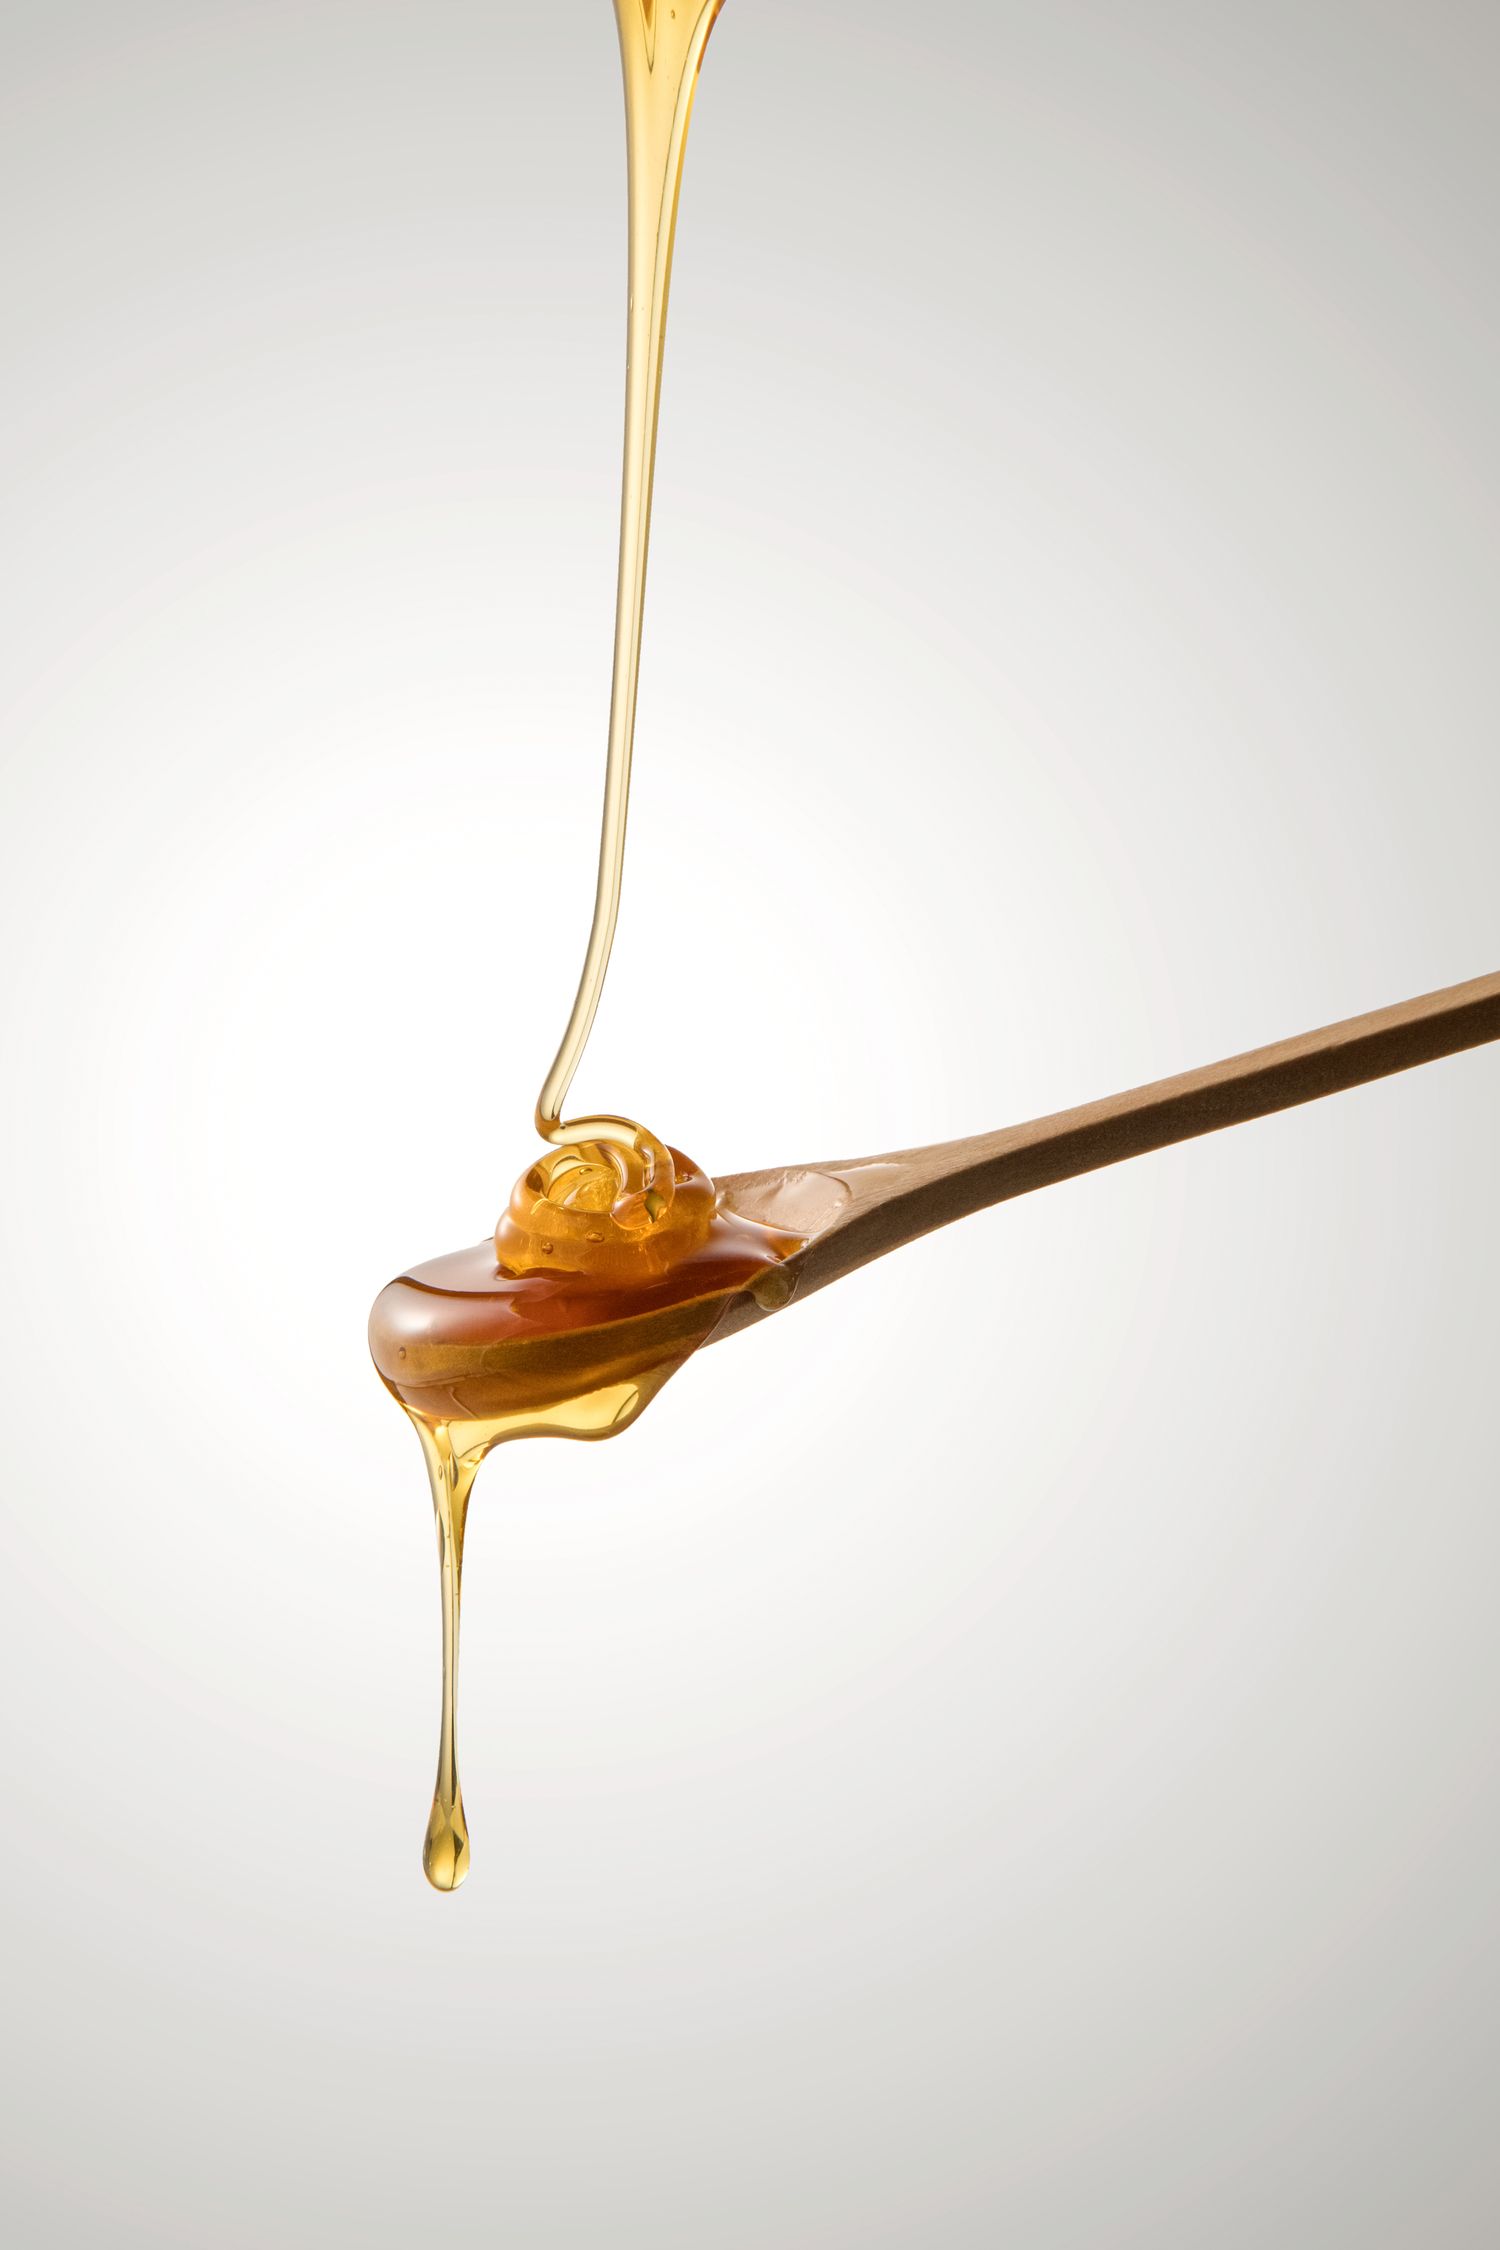 法國羅曼蜂蜜 Romain's Honey | 來自法國 · 100%純天然生蜂蜜